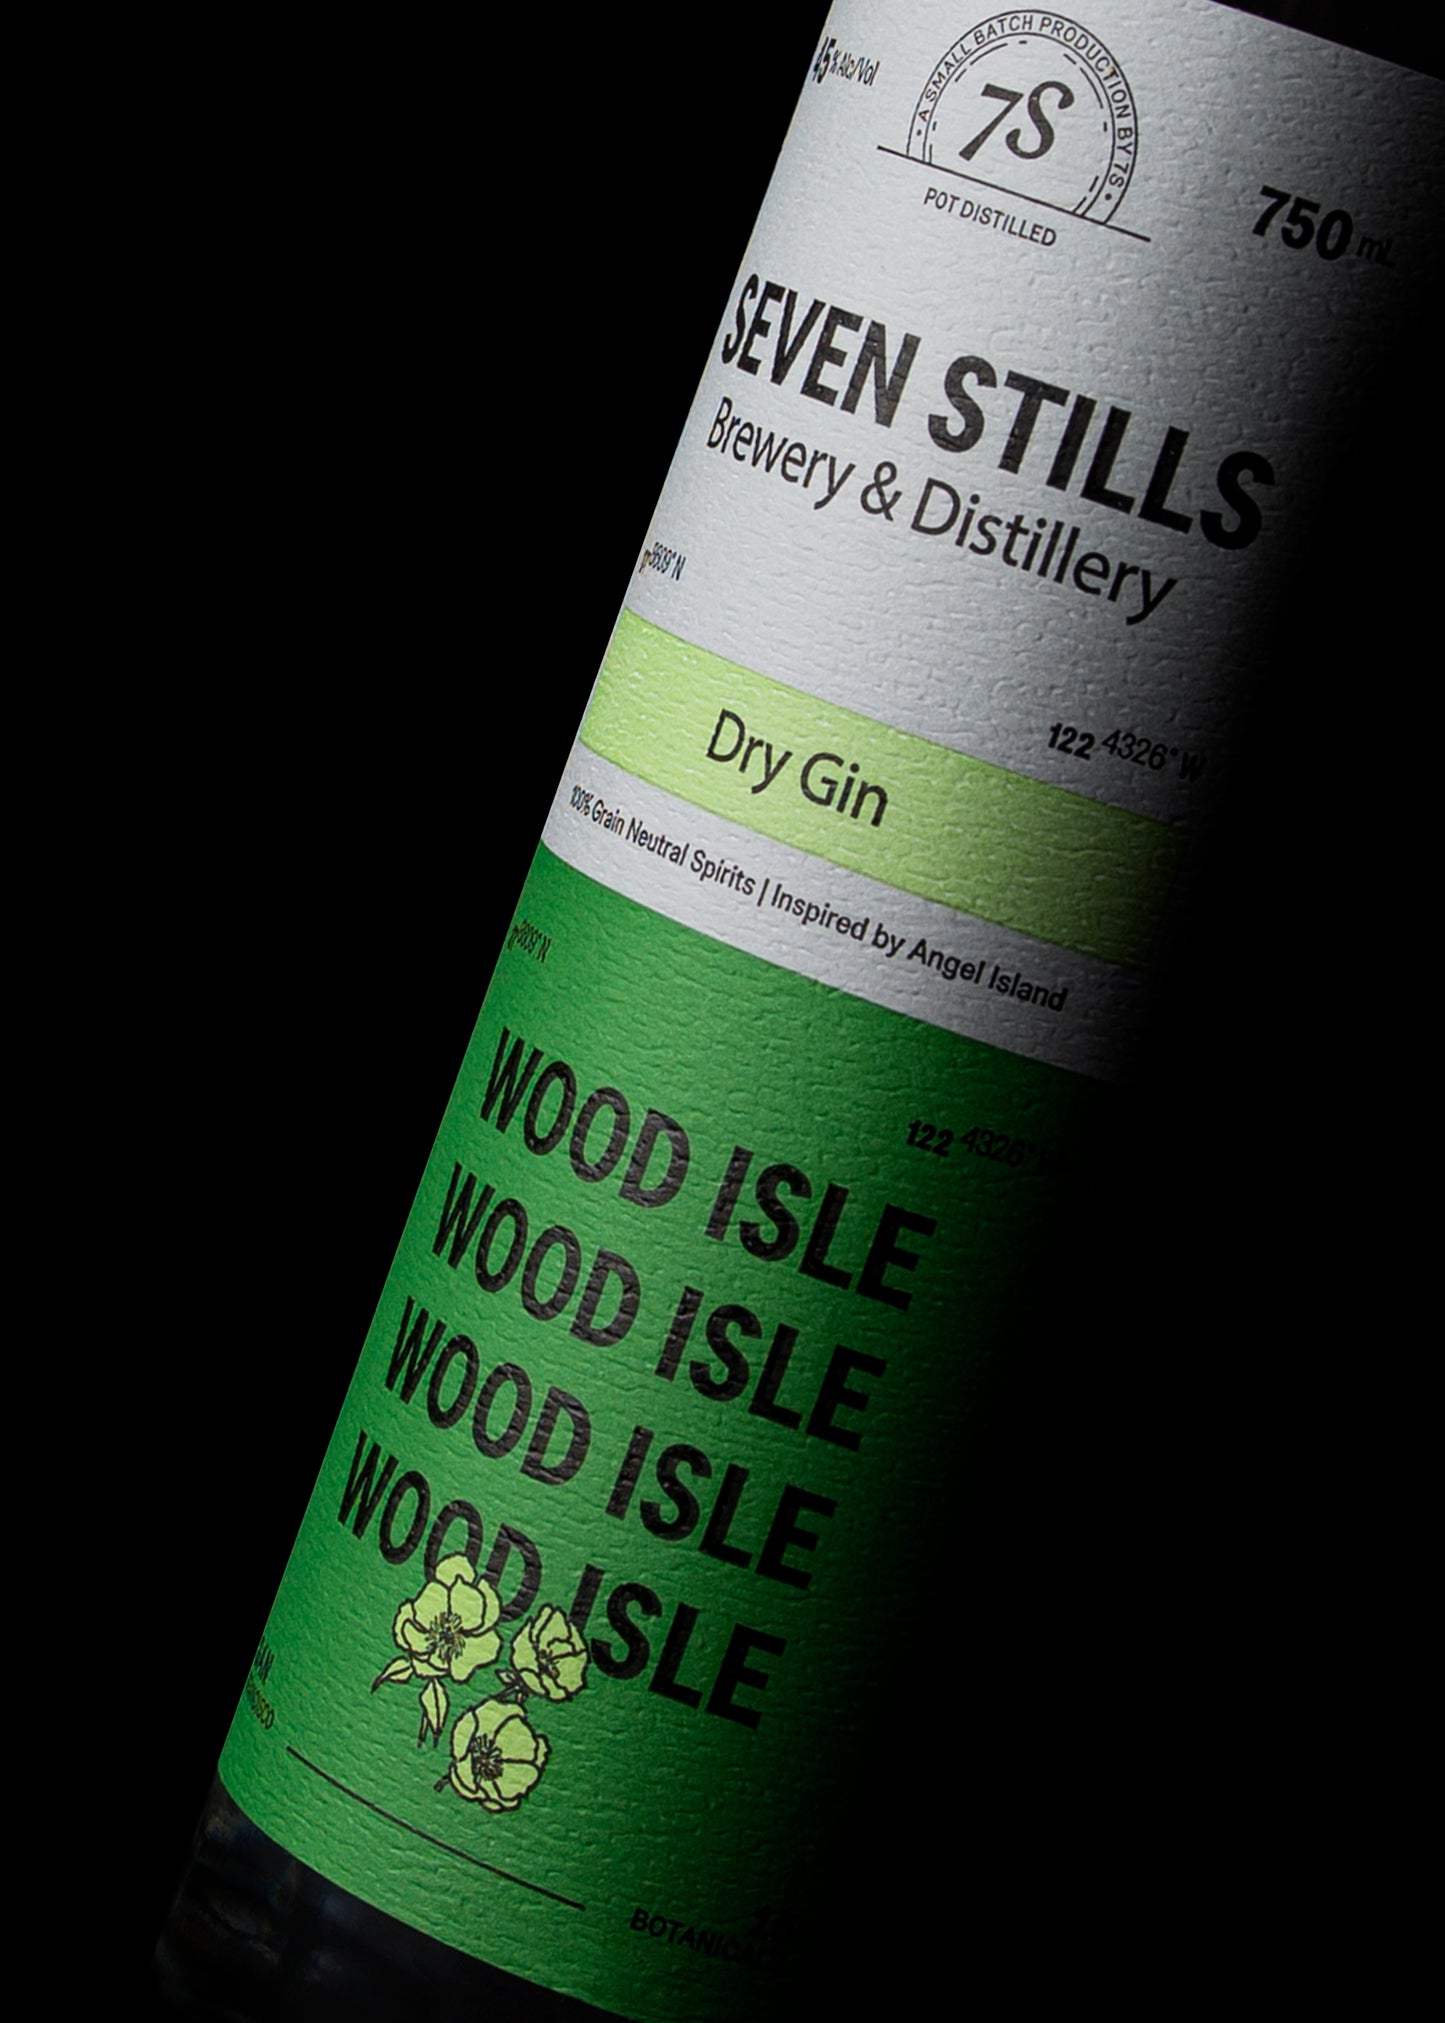 Wood Isle Gin